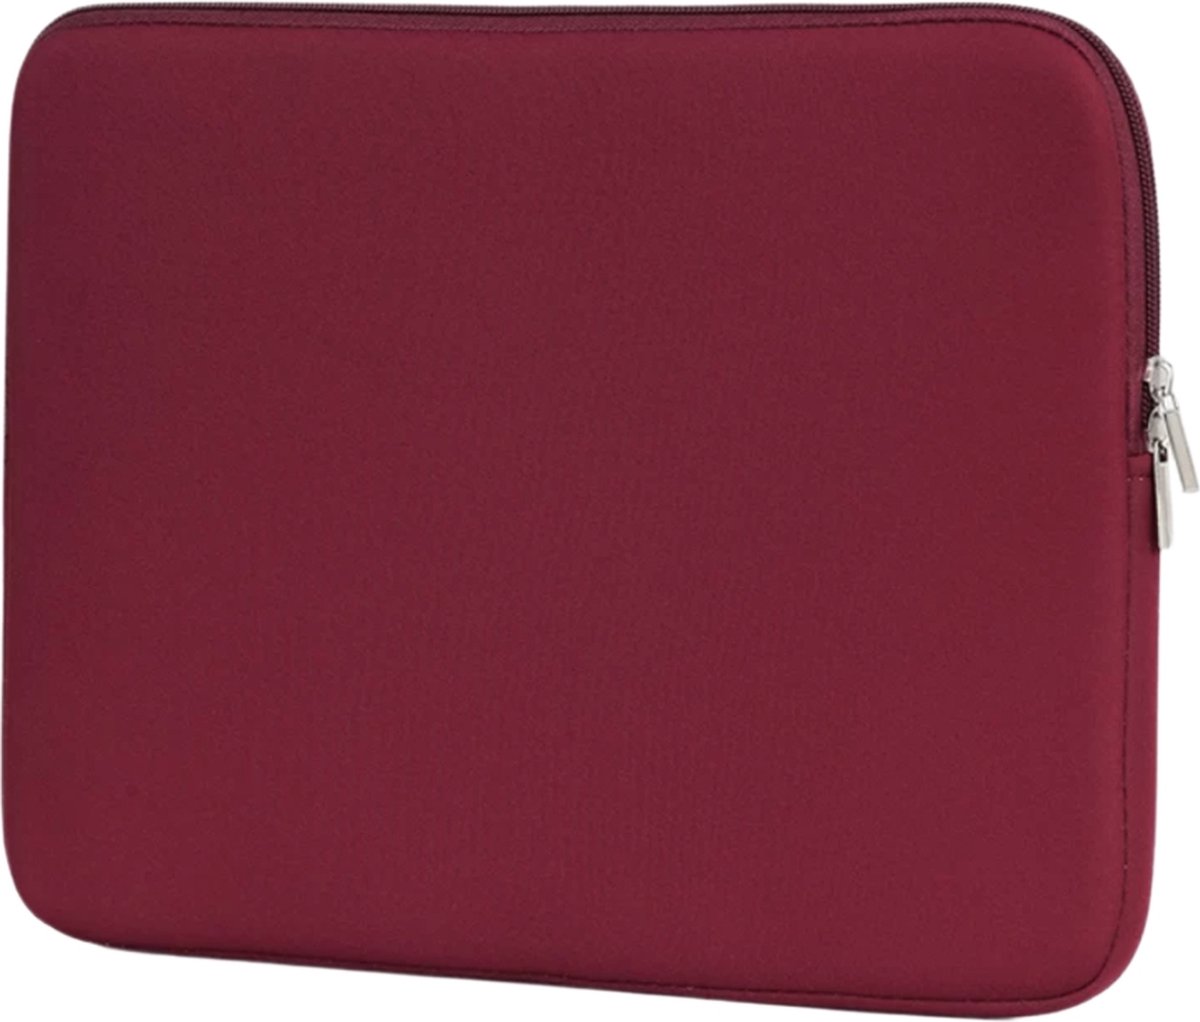 Spatwaterdichte laptopsleeve – 15,6 inch - dubbele ritssluiting- bordeaux rood - unisex - spatwaterbestending